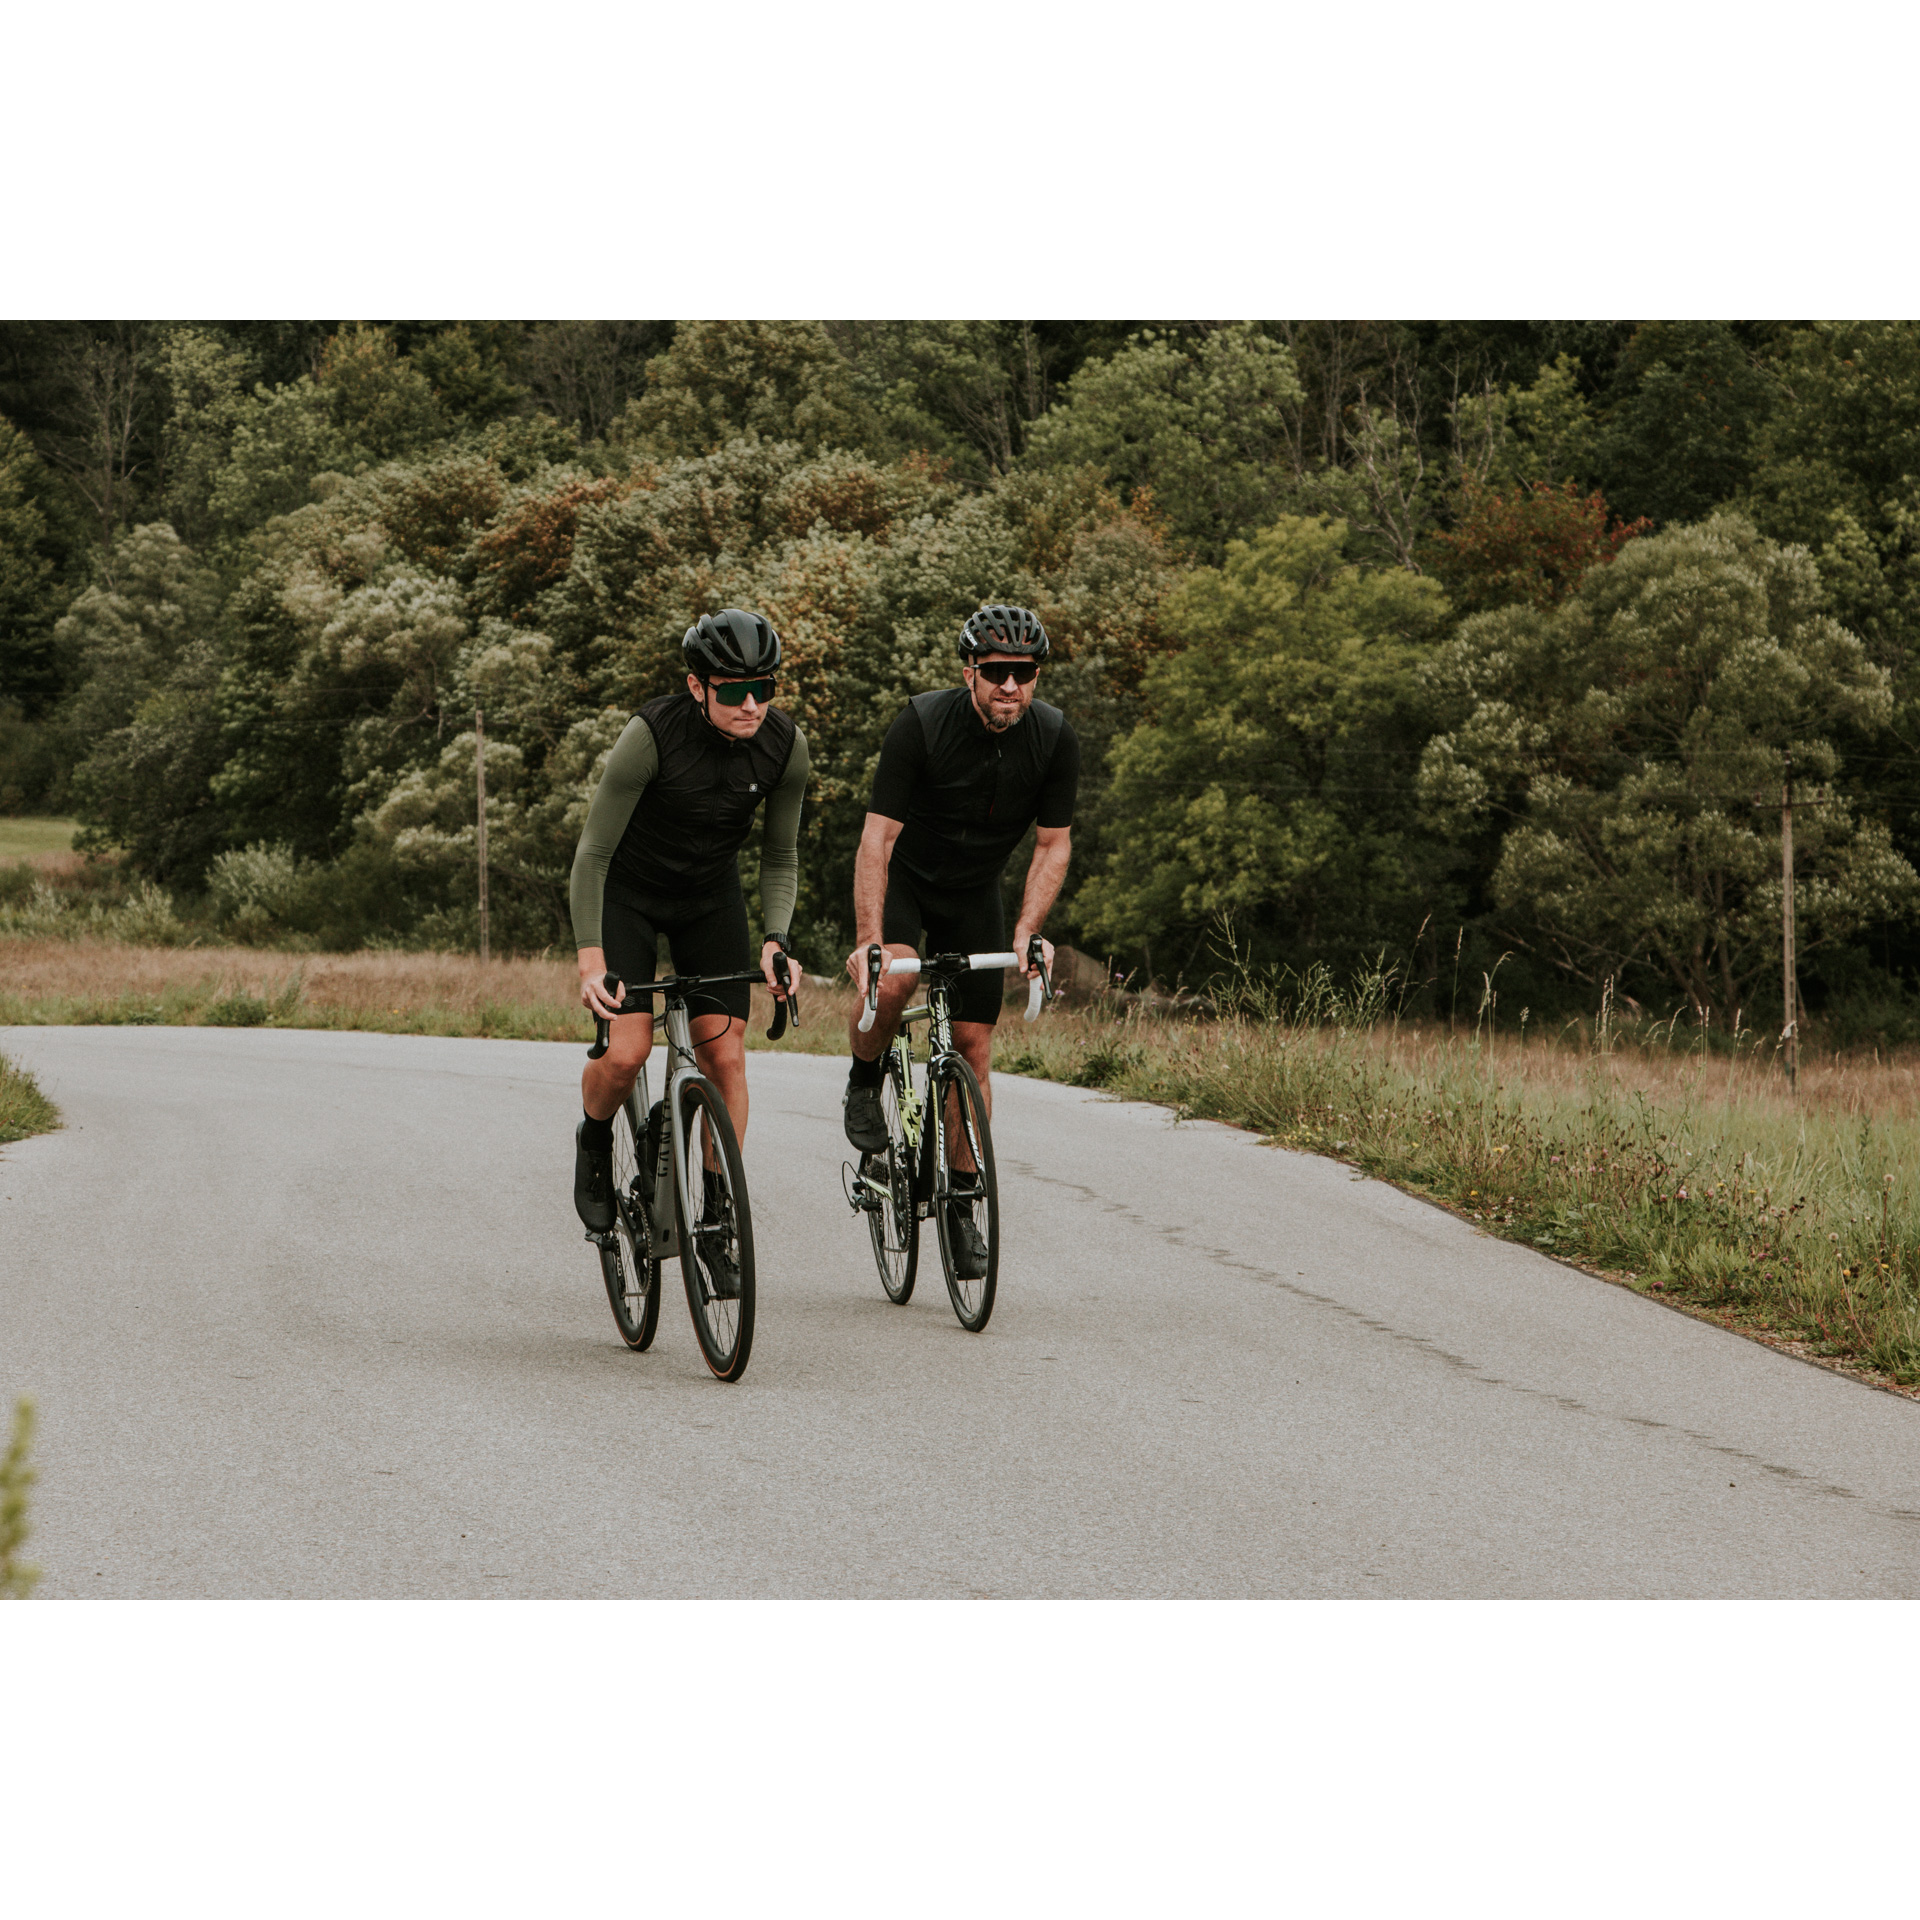 Dwójka rowerzystów w czarnych strojach i kaskach jadąca drogą asfaltową na tle zielonego lasu